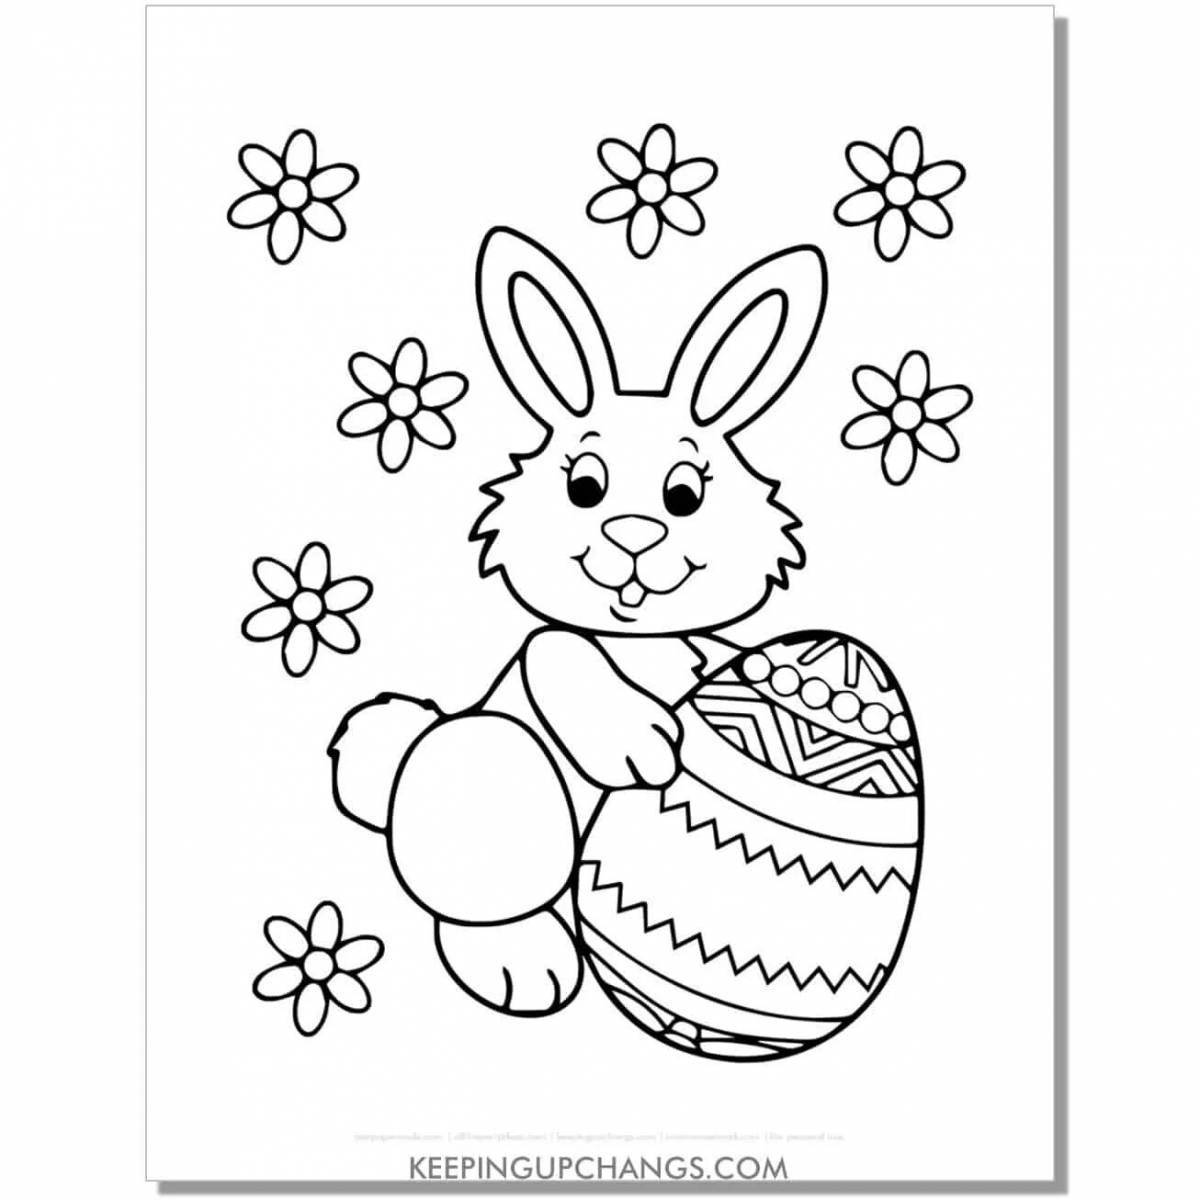 Adorable bunny coloring book